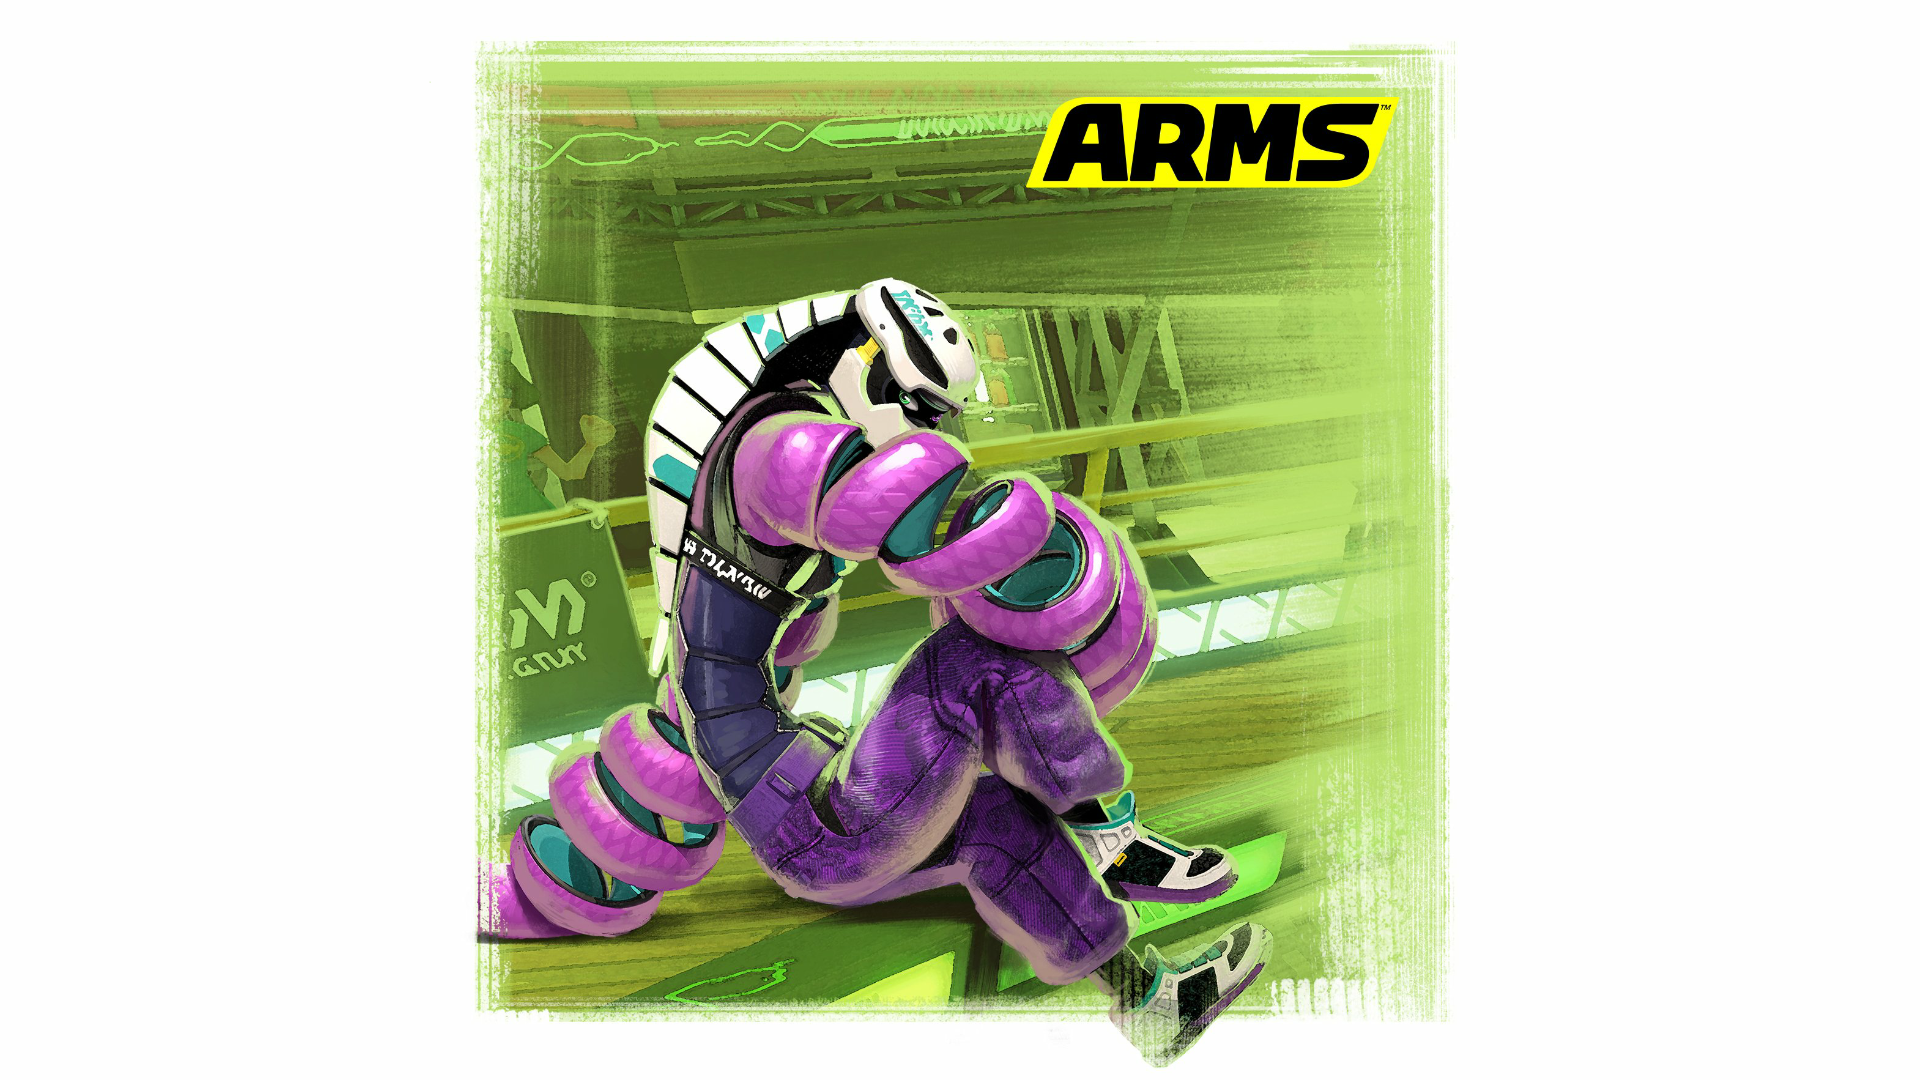 Kid Cobra protagoniza el último arte oficial de ARMS